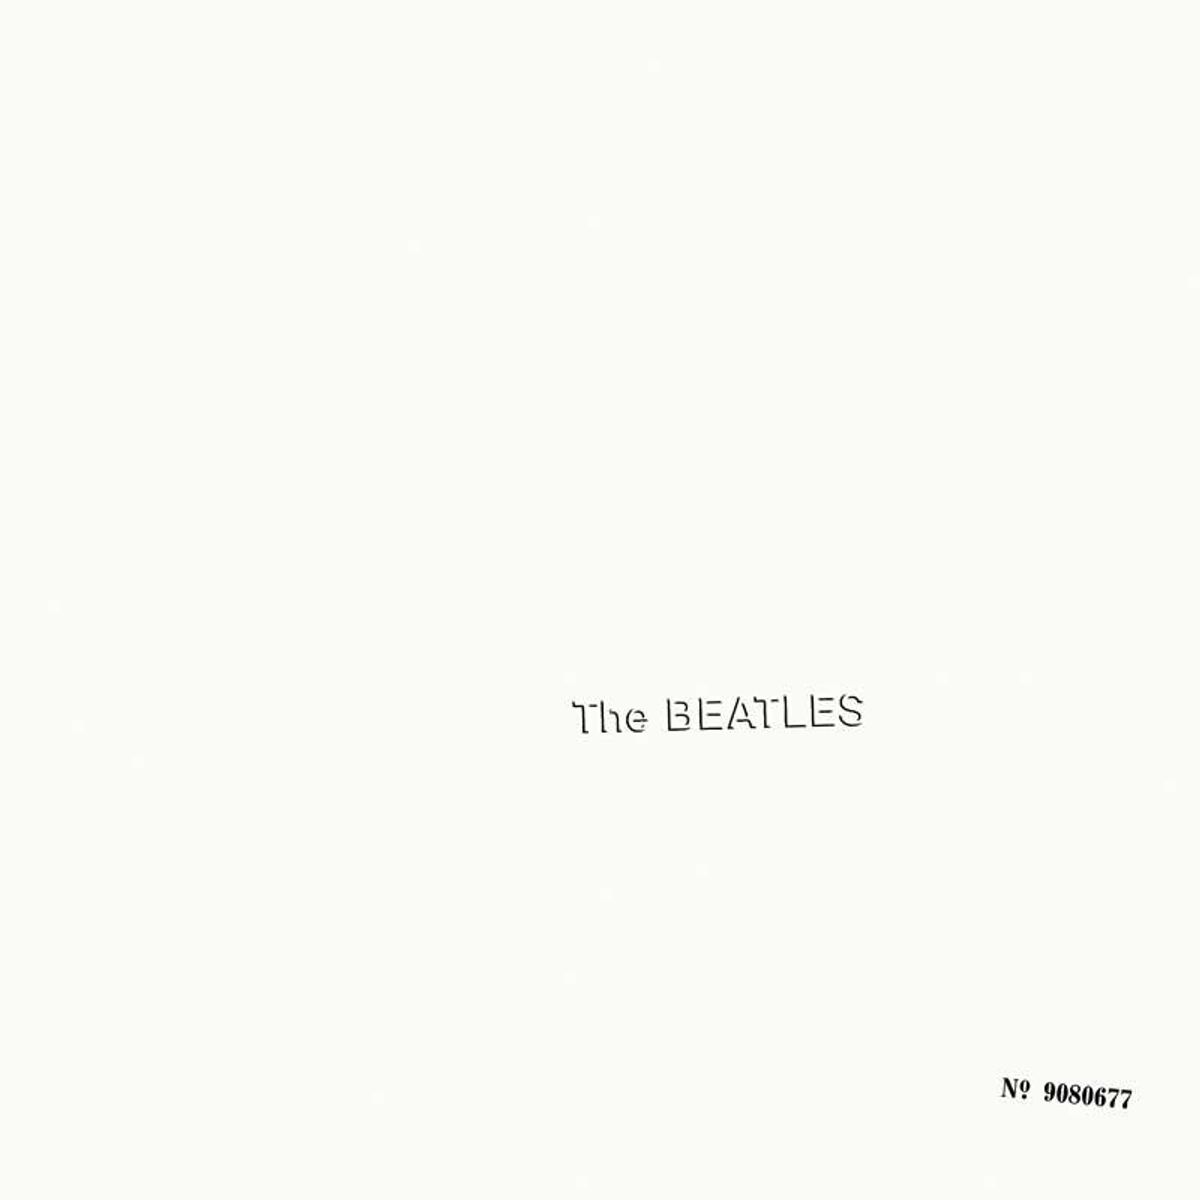 The artist Richard Hamilton designed the cover for The Beatles' White Album 